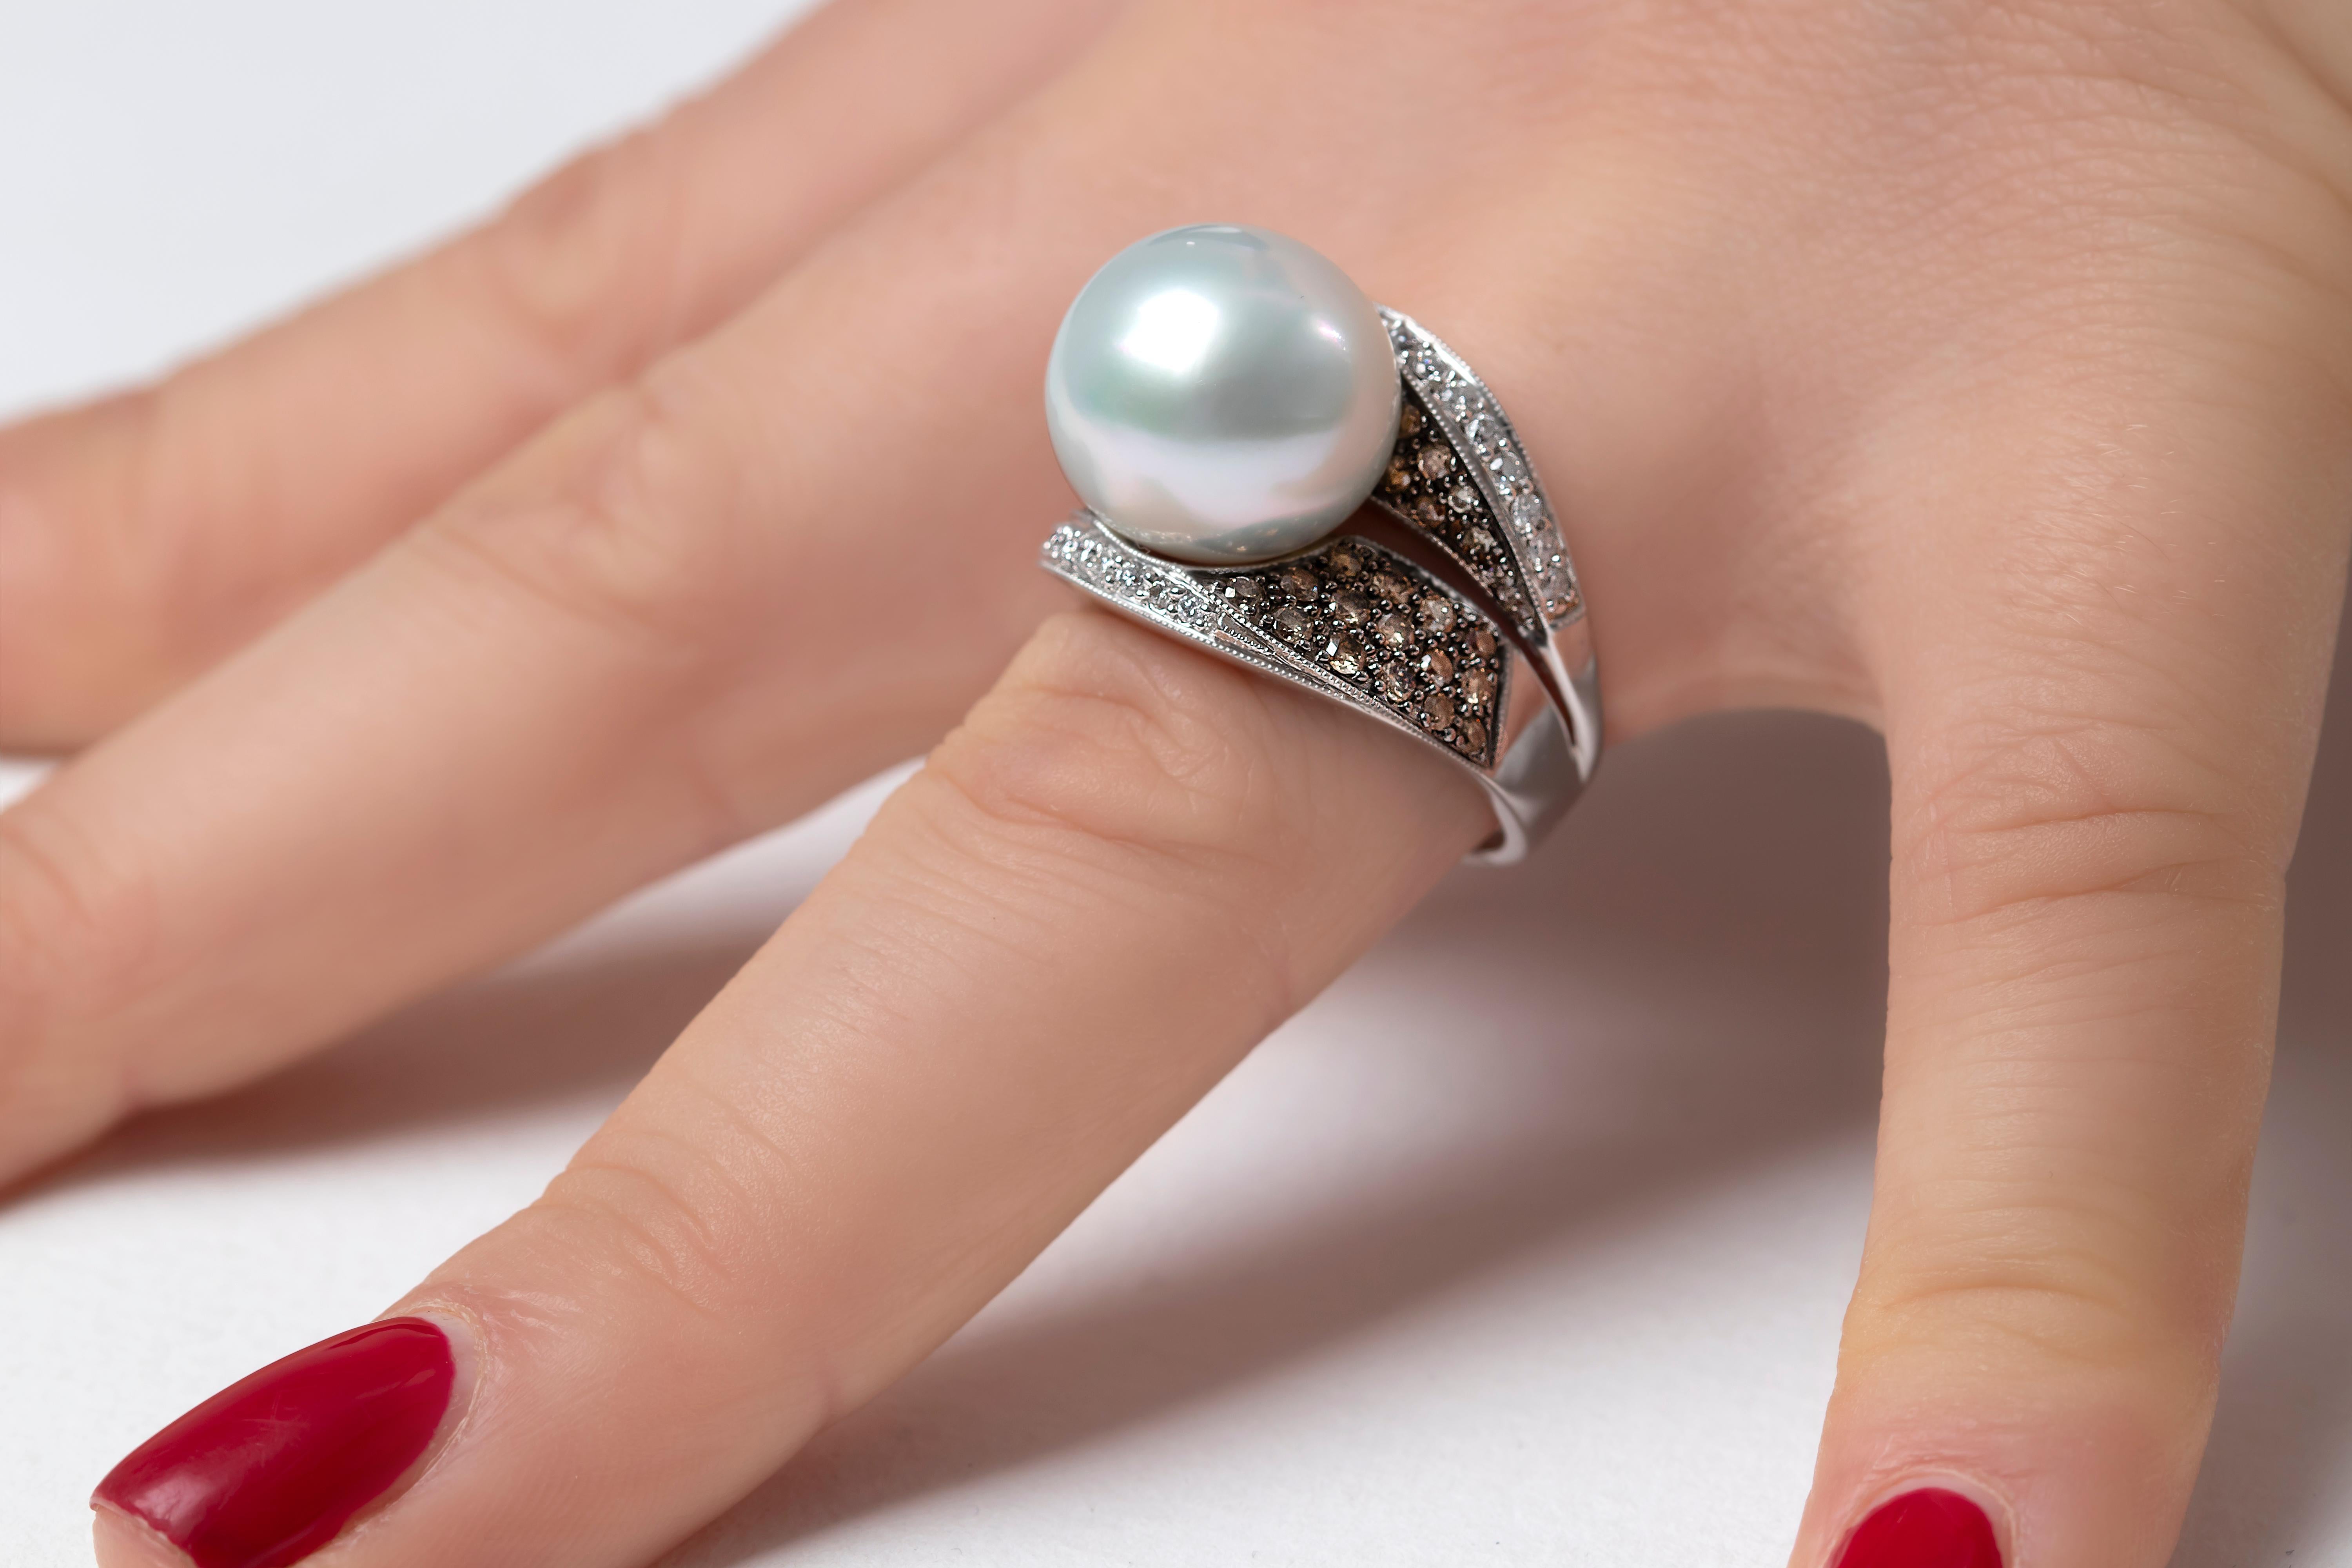 Cette élégante bague de Yoko London Pearls est ornée d'une perle des mers du Sud lustrée, sertie d'un ensemble scintillant de diamants bruns et blancs. Audacieuse et frappante, cette bague unique en son genre ajoutera une touche d'élégance unique à